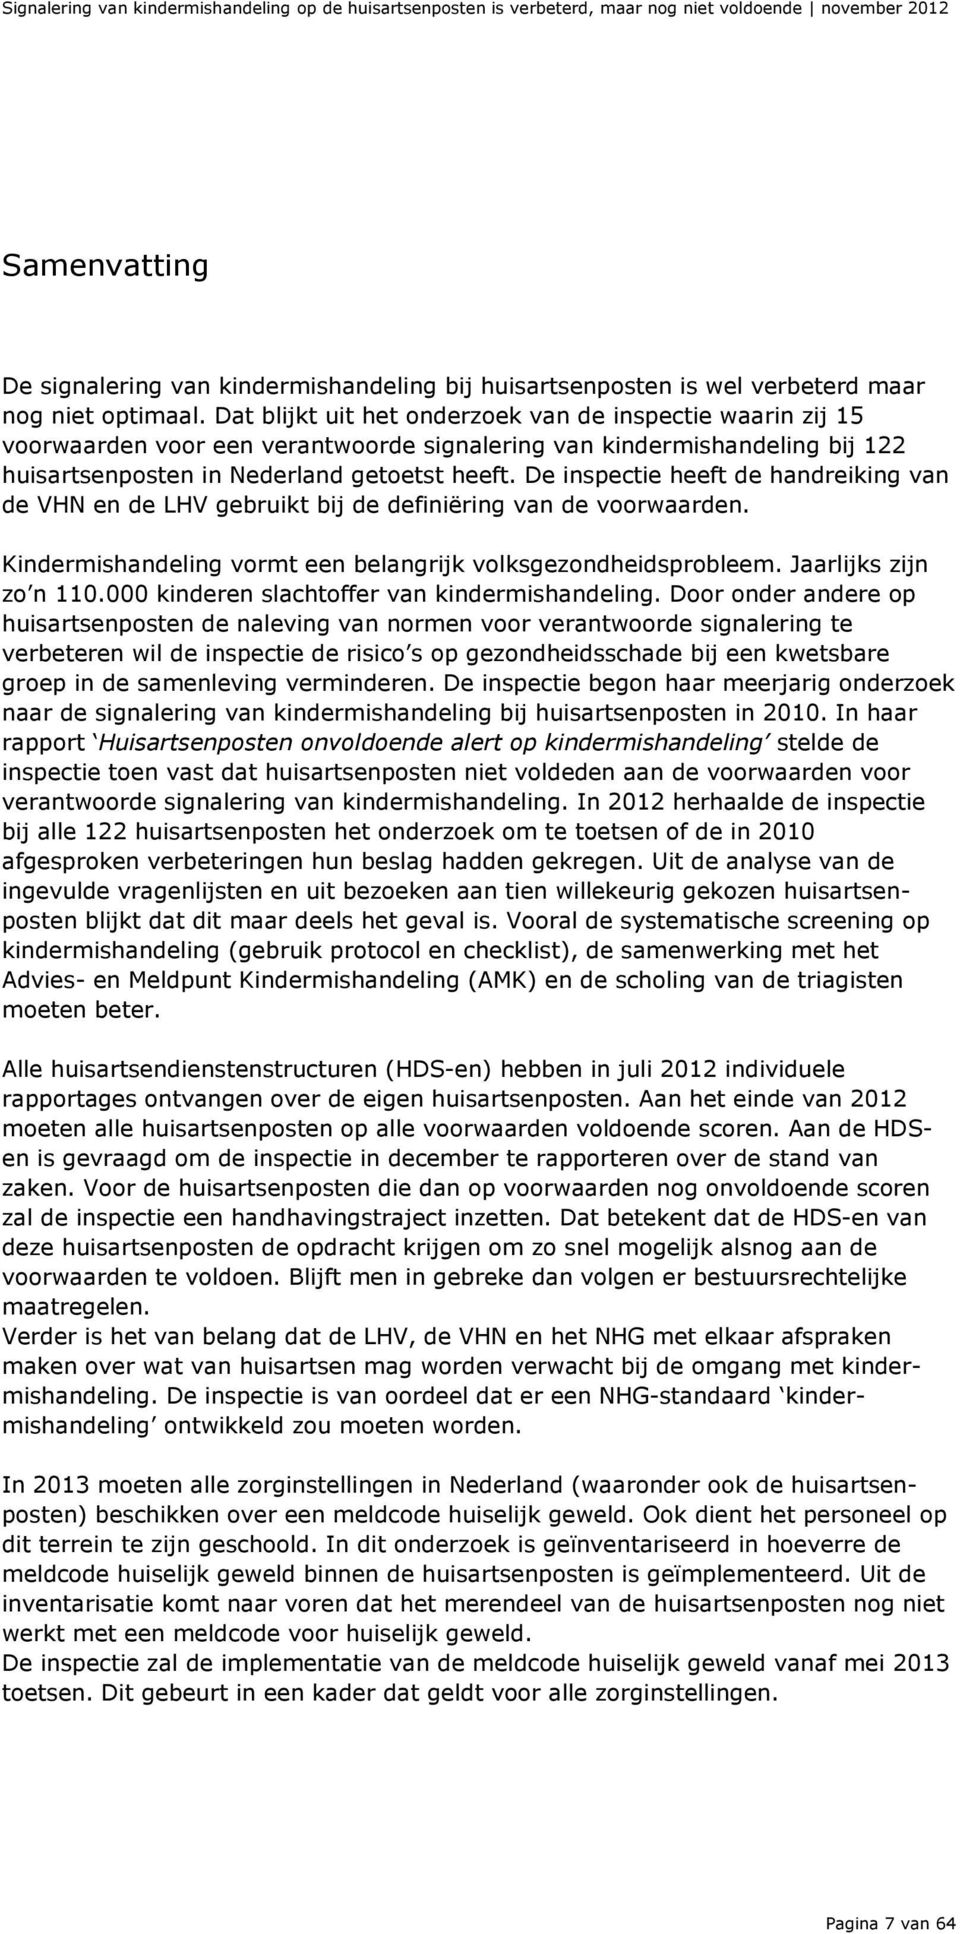 Dat blijkt uit het onderzoek van de inspectie waarin zij 15 voorwaarden voor een verantwoorde signalering van kindermishandeling bij 122 huisartsenposten in Nederland getoetst heeft.